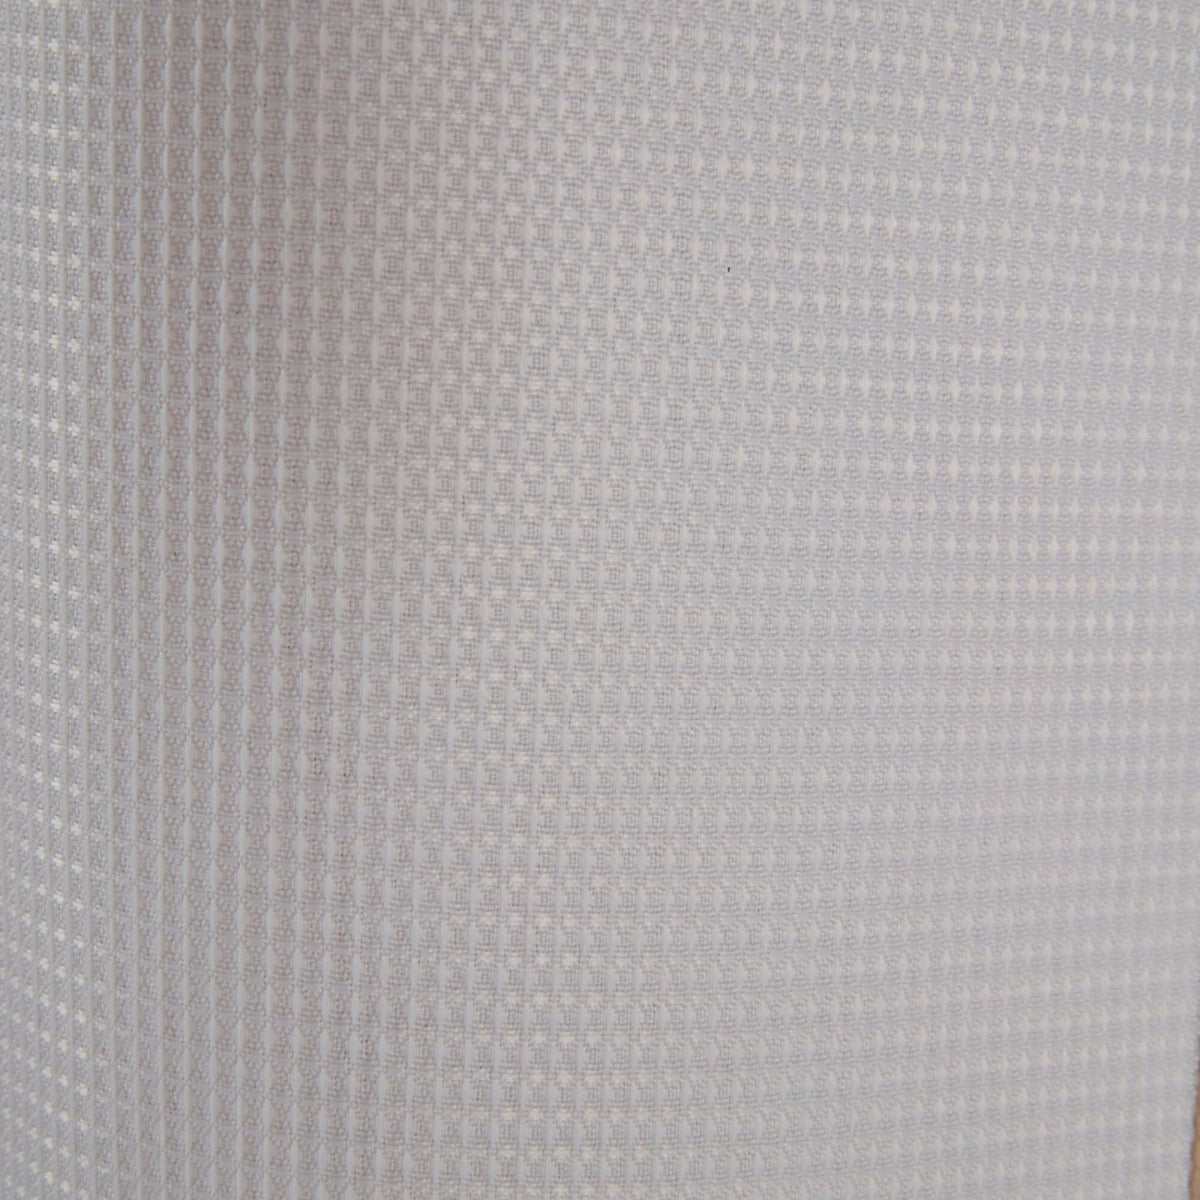 Waffie zuhanyfüggöny 220x180cm fehér